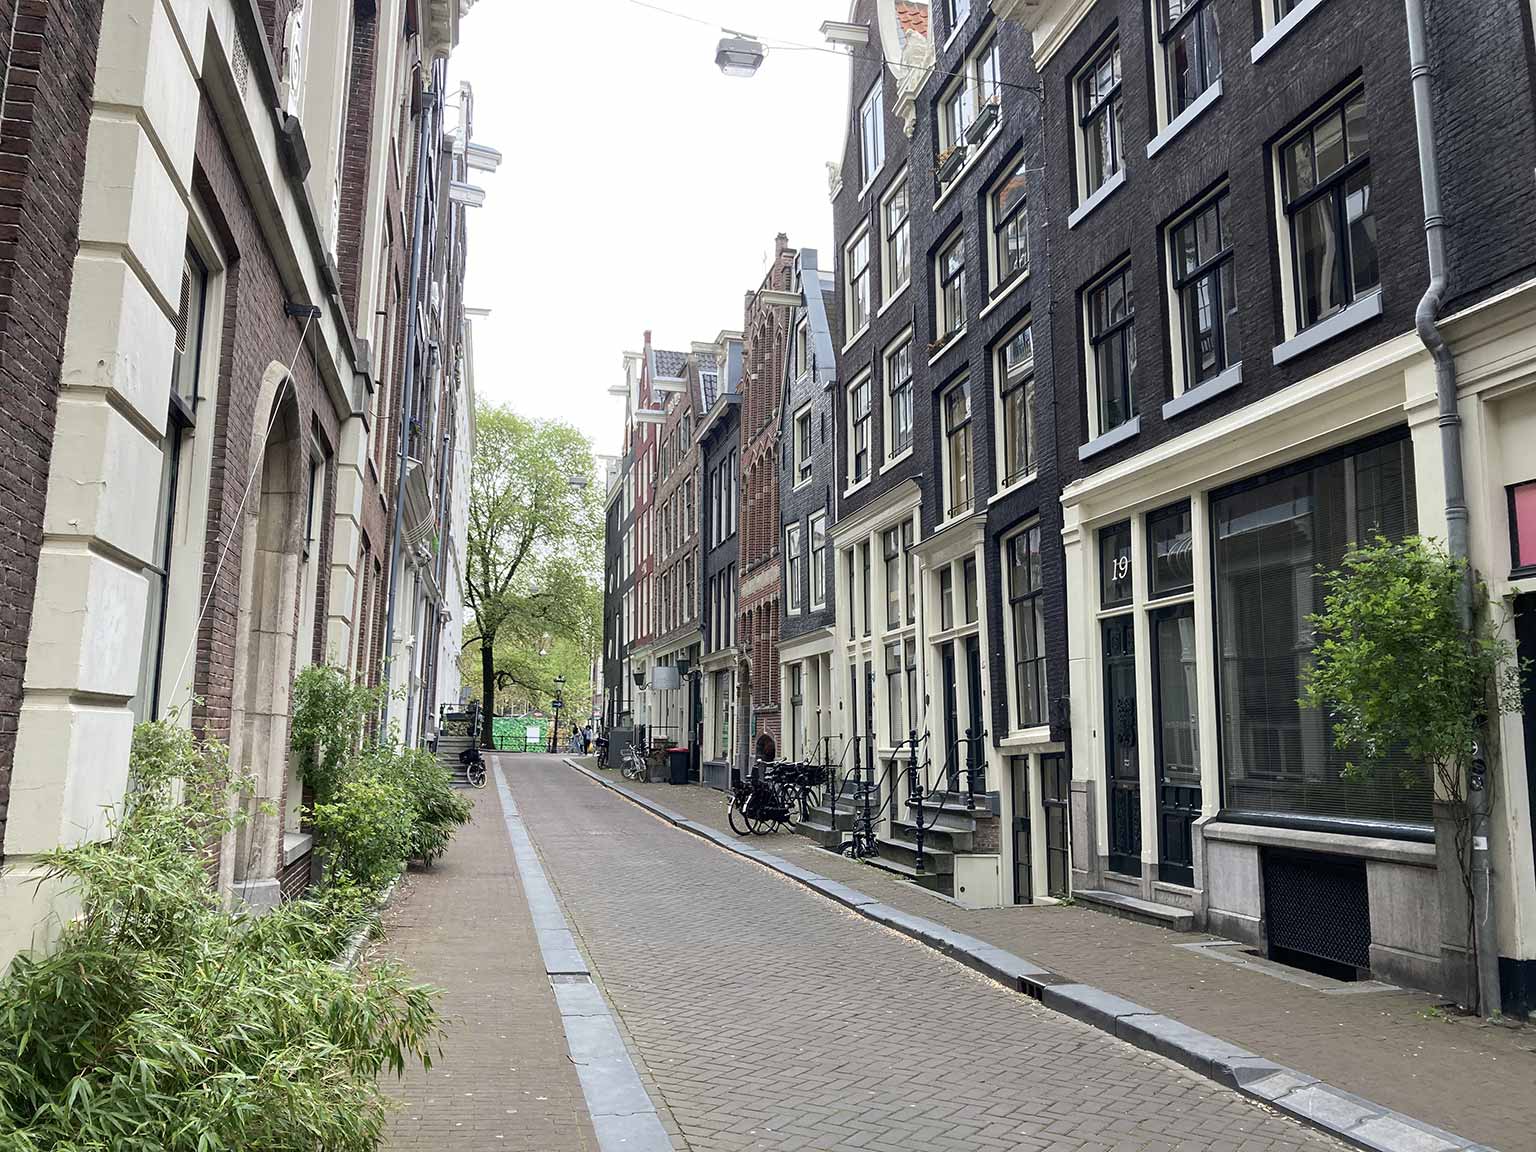 Beulingstraat, Amsterdam, seen from number 10 towards the Singel